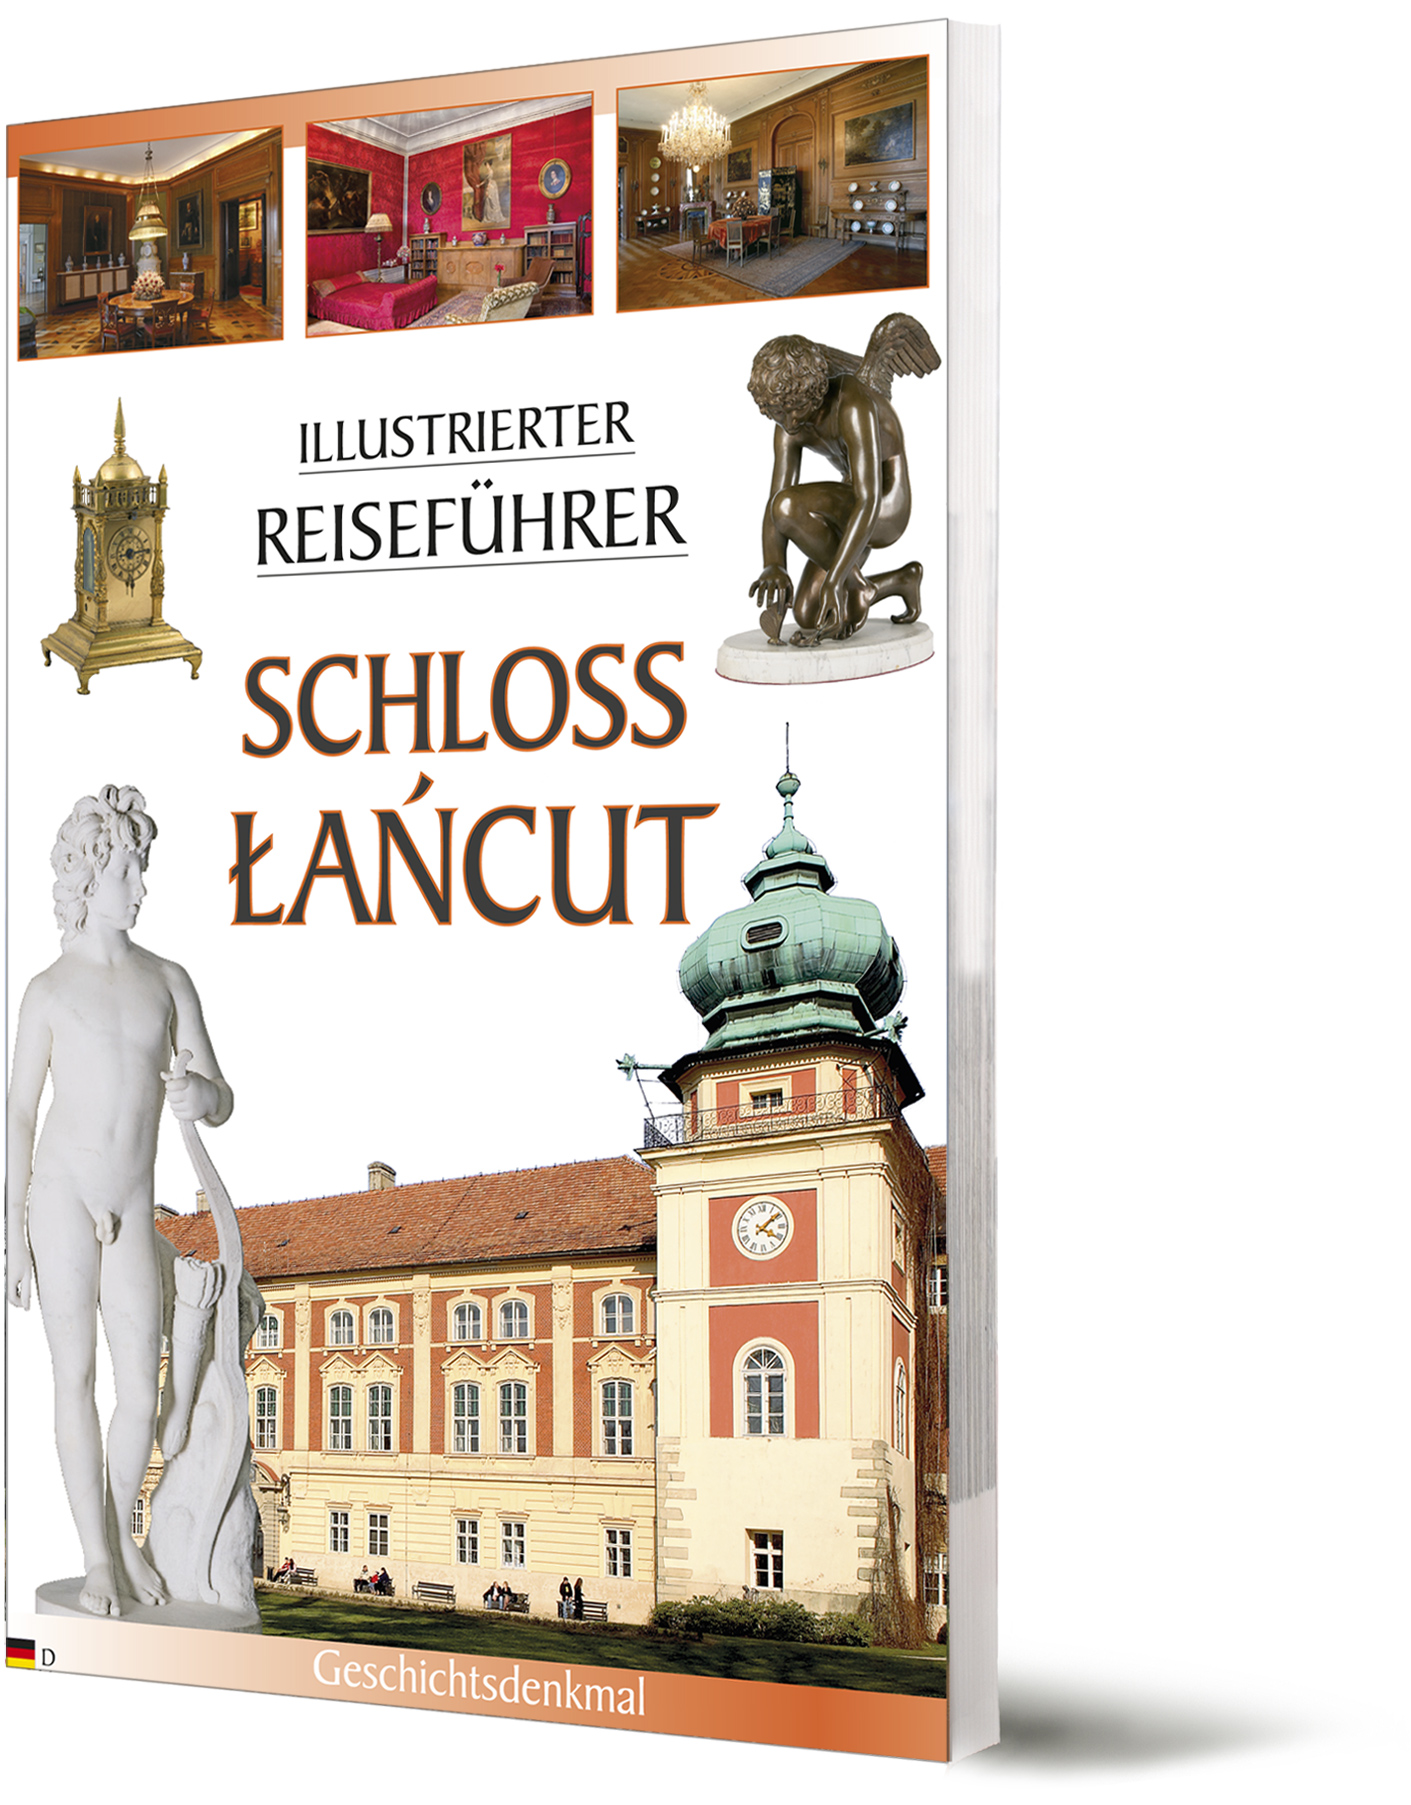 Łańcut Schloss reisefuhrer